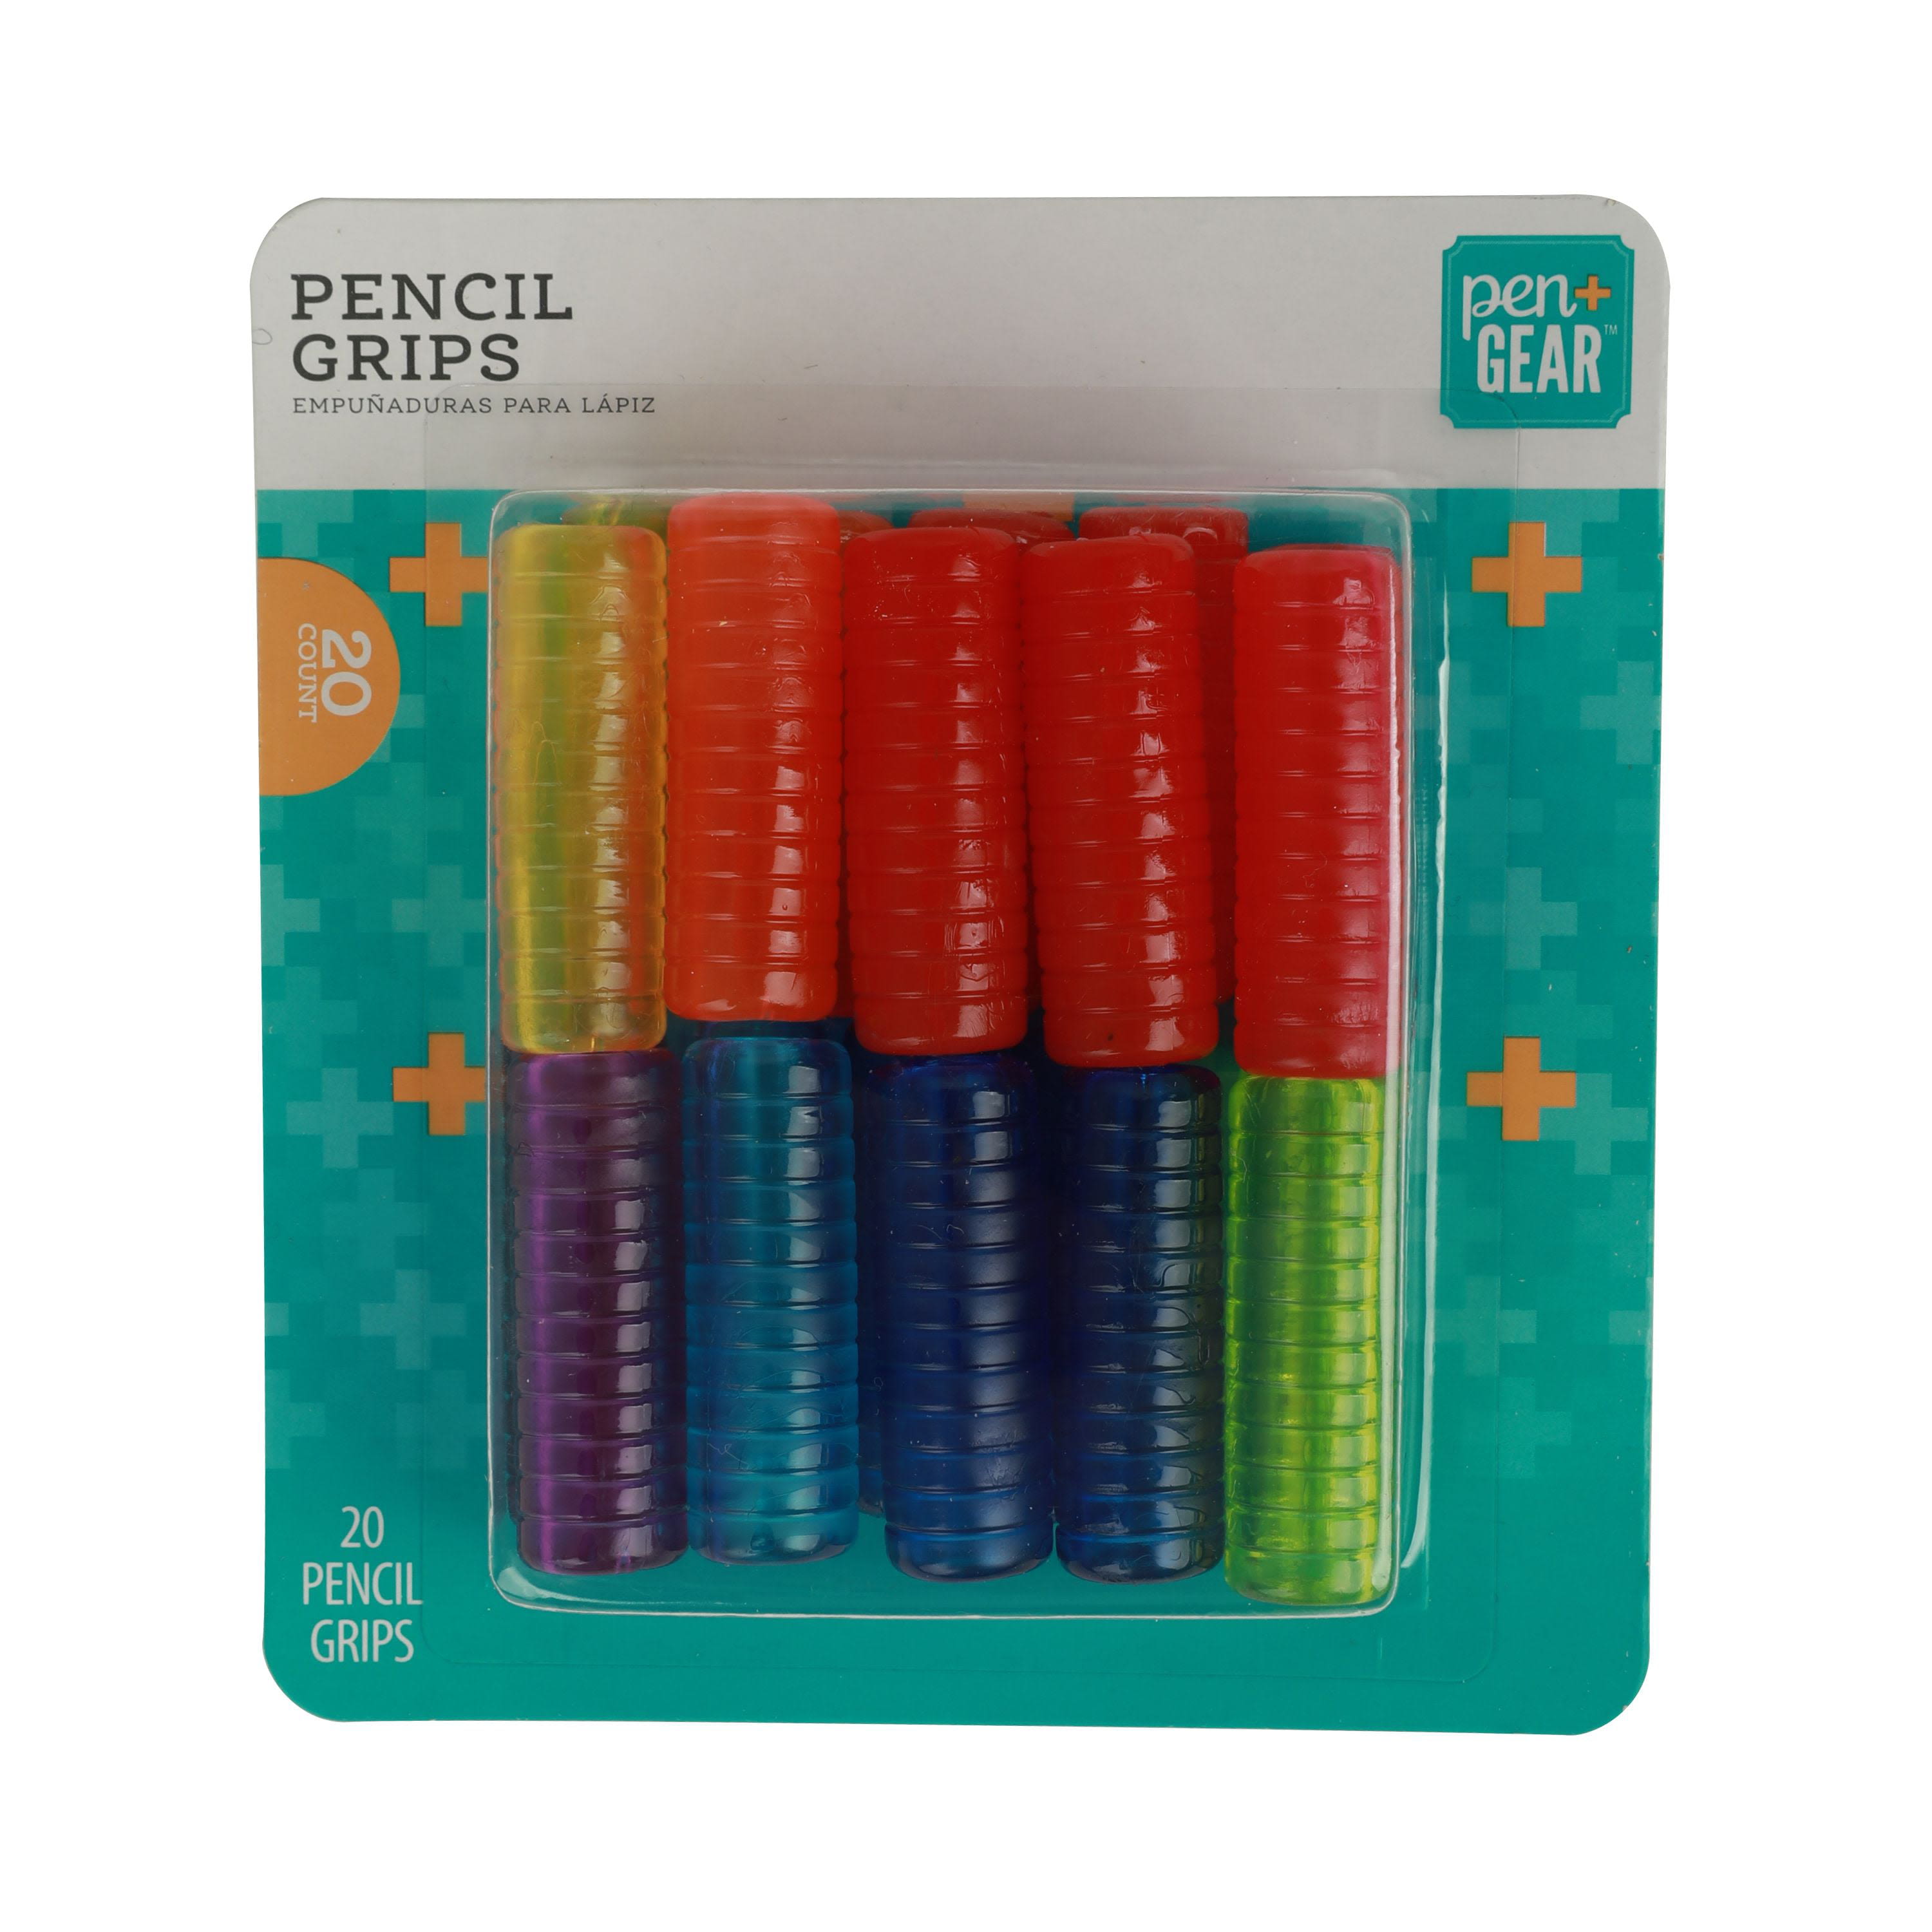 Pen + Gear Soft Pencil Grip, Silicone Rubber, Multicolor, 20 Count